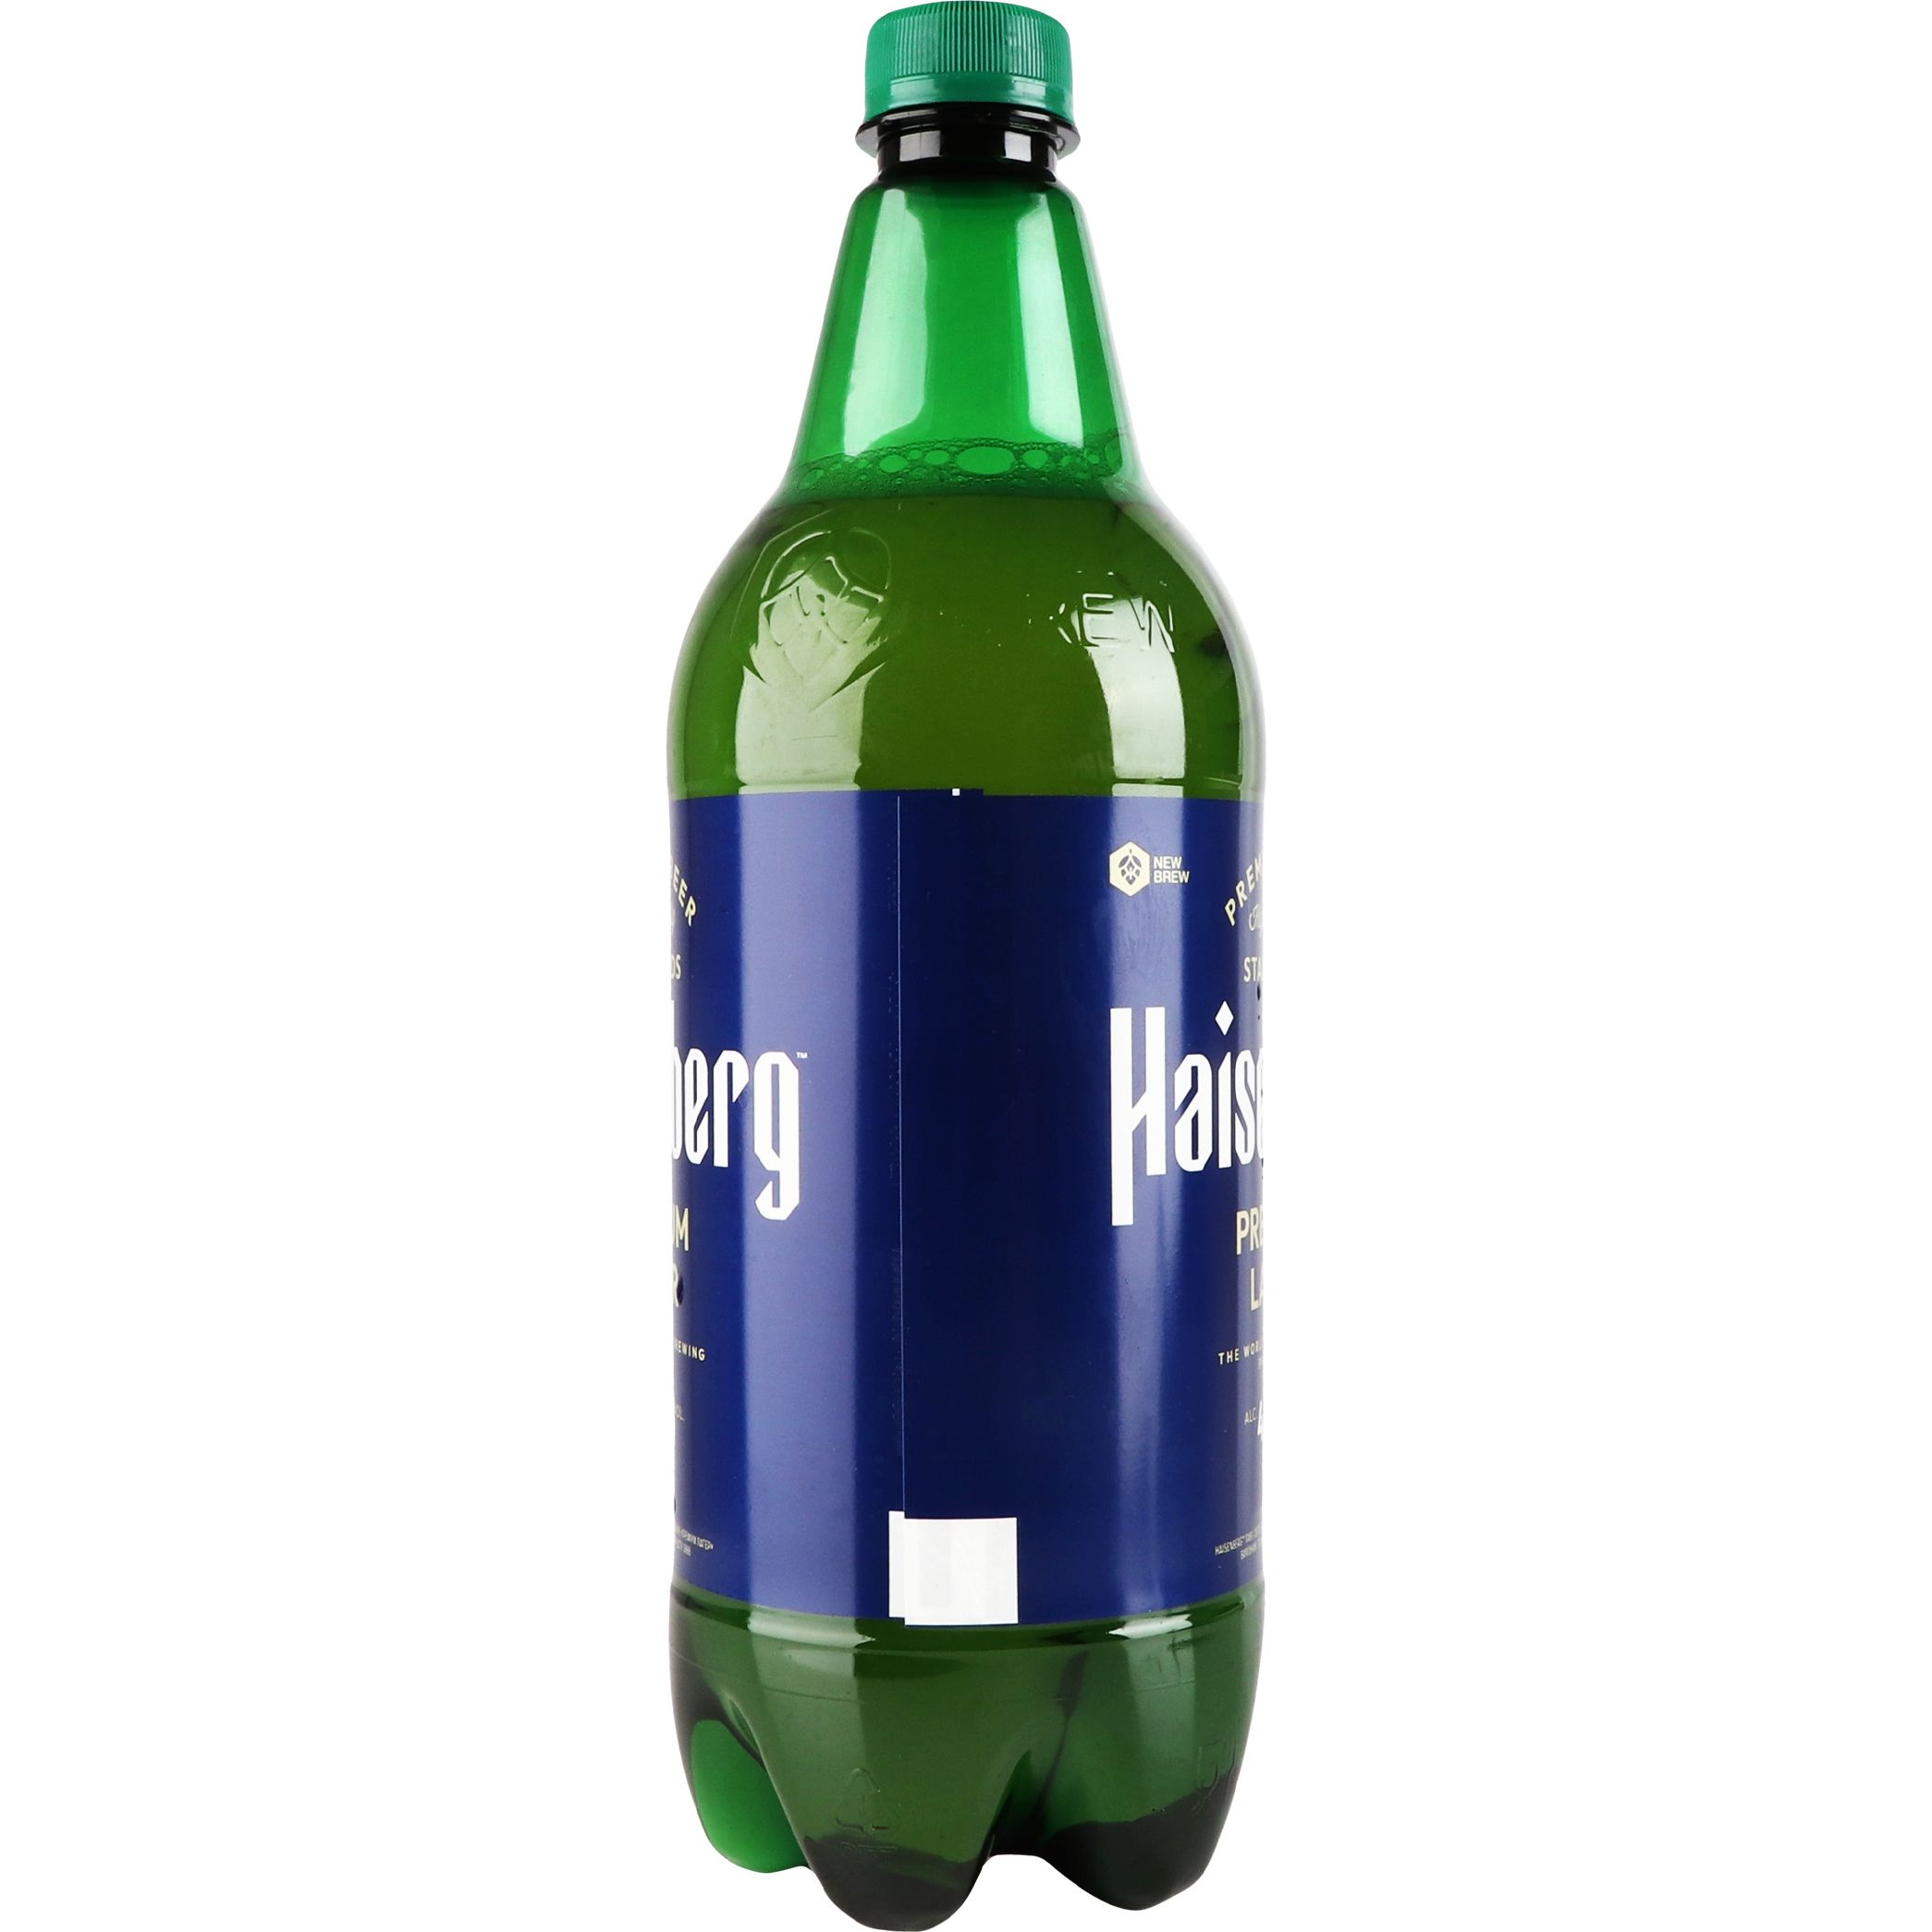 Пиво Haisenberg Premium Lager светлое 4.5% 1 л - фото 2